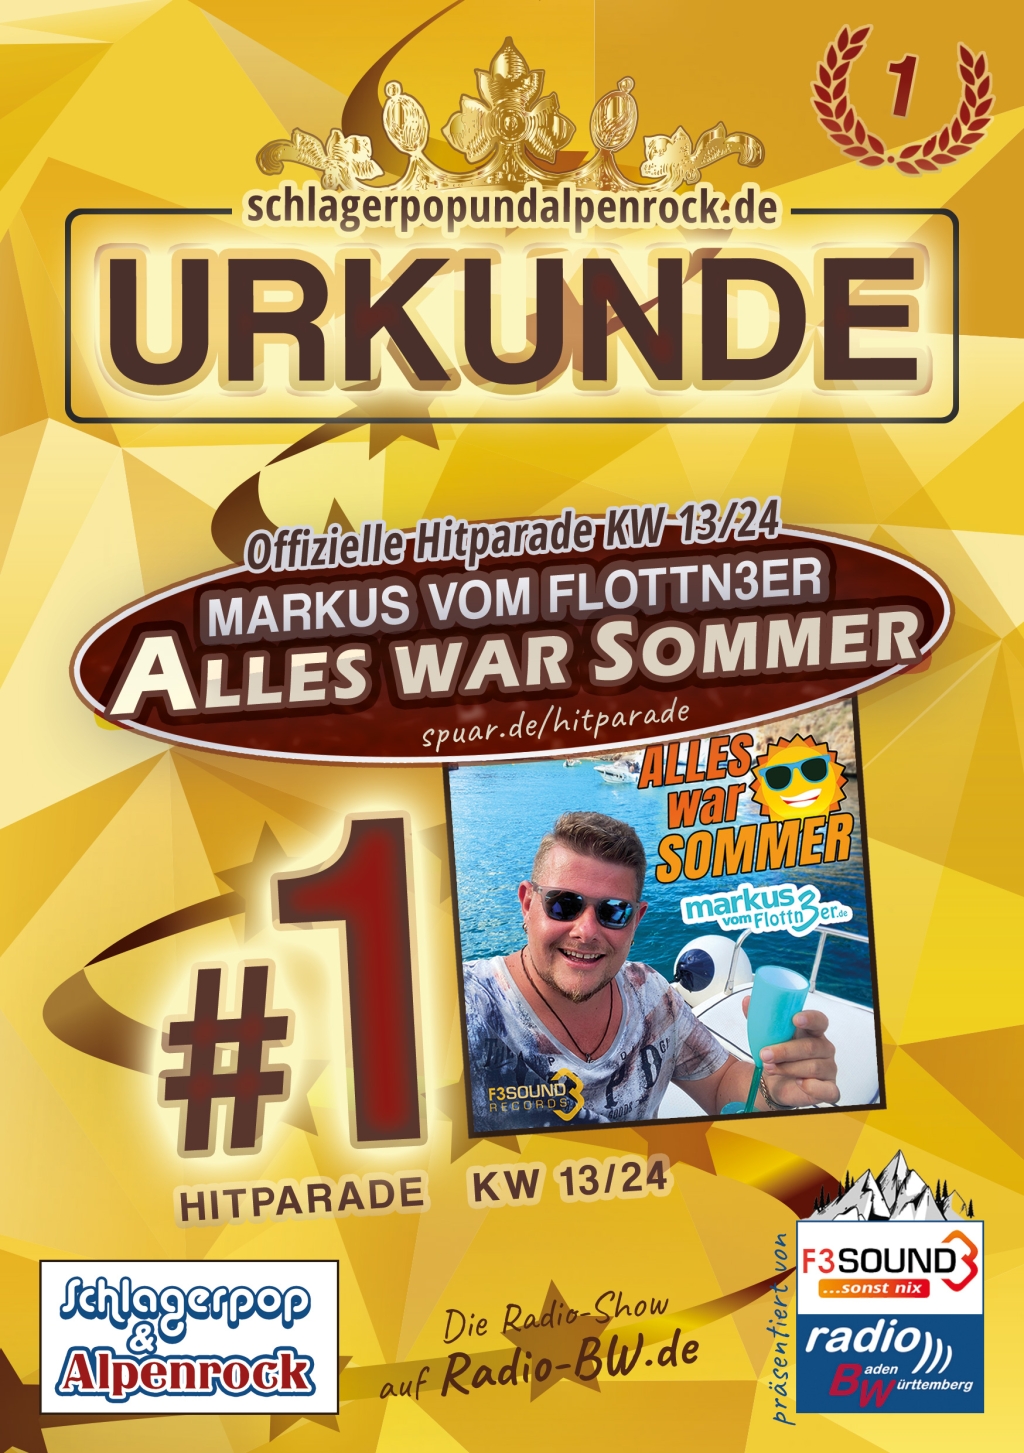 URKUNDE - Offizielle Hitparade KW 13/24